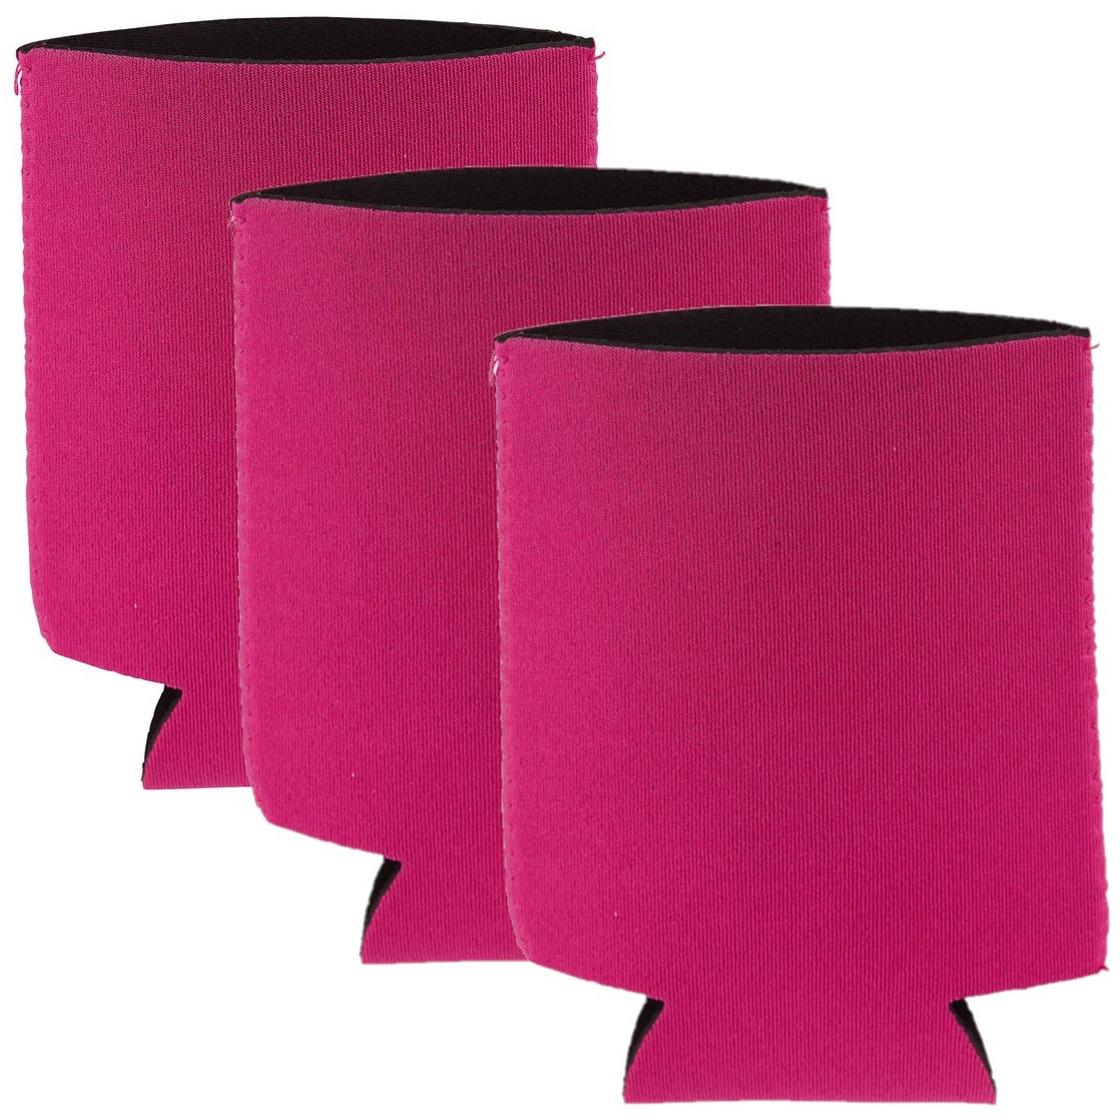 5x Stuks opvouwbare blikjeskoelers- koel hoesjes fuchsia roze